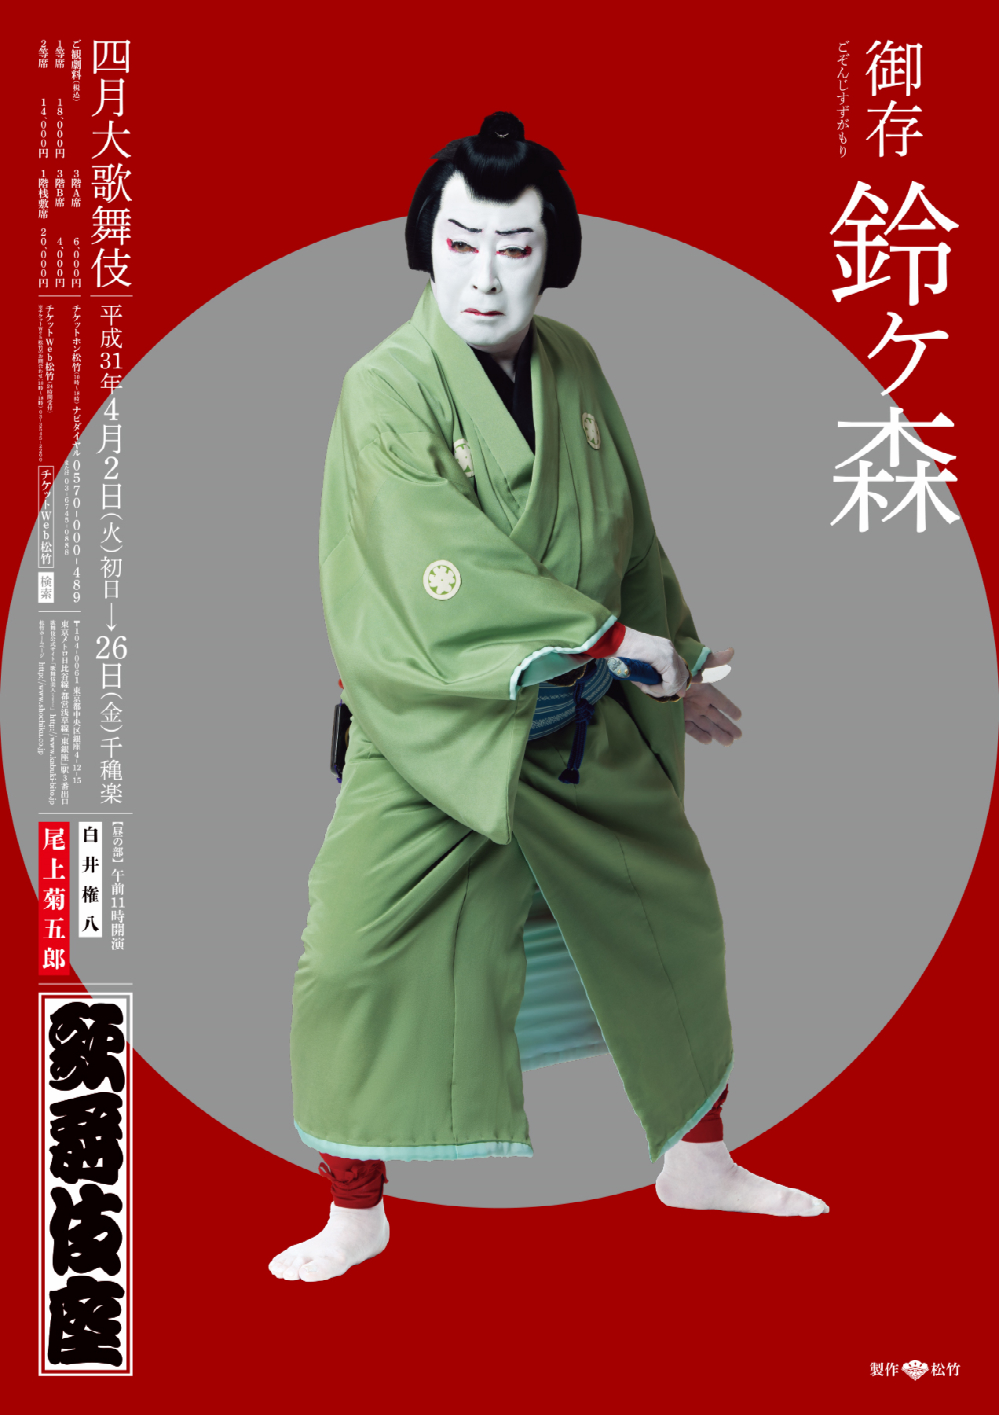 歌舞伎座「四月大歌舞伎」特別ポスターが完成